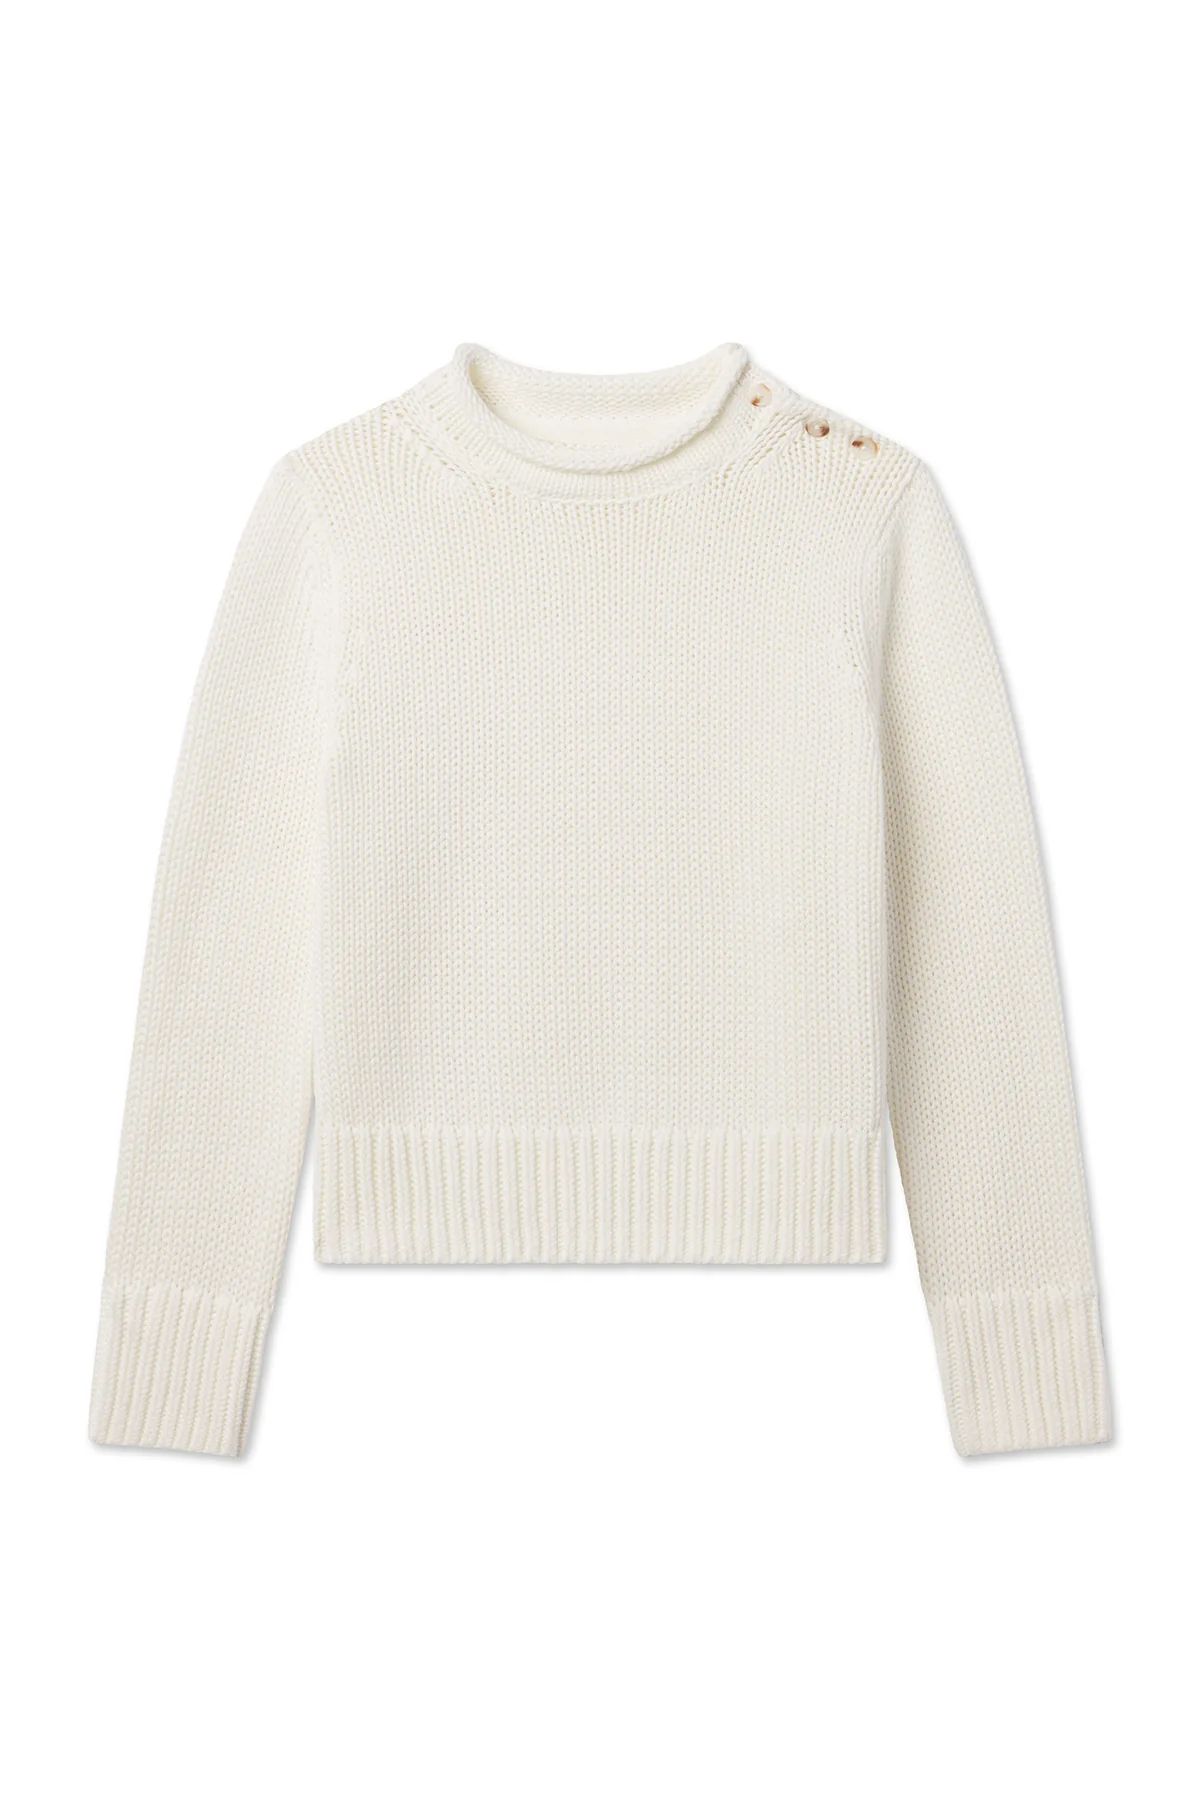 Jane Cotton Sweater in Ivory | Lake Pajamas